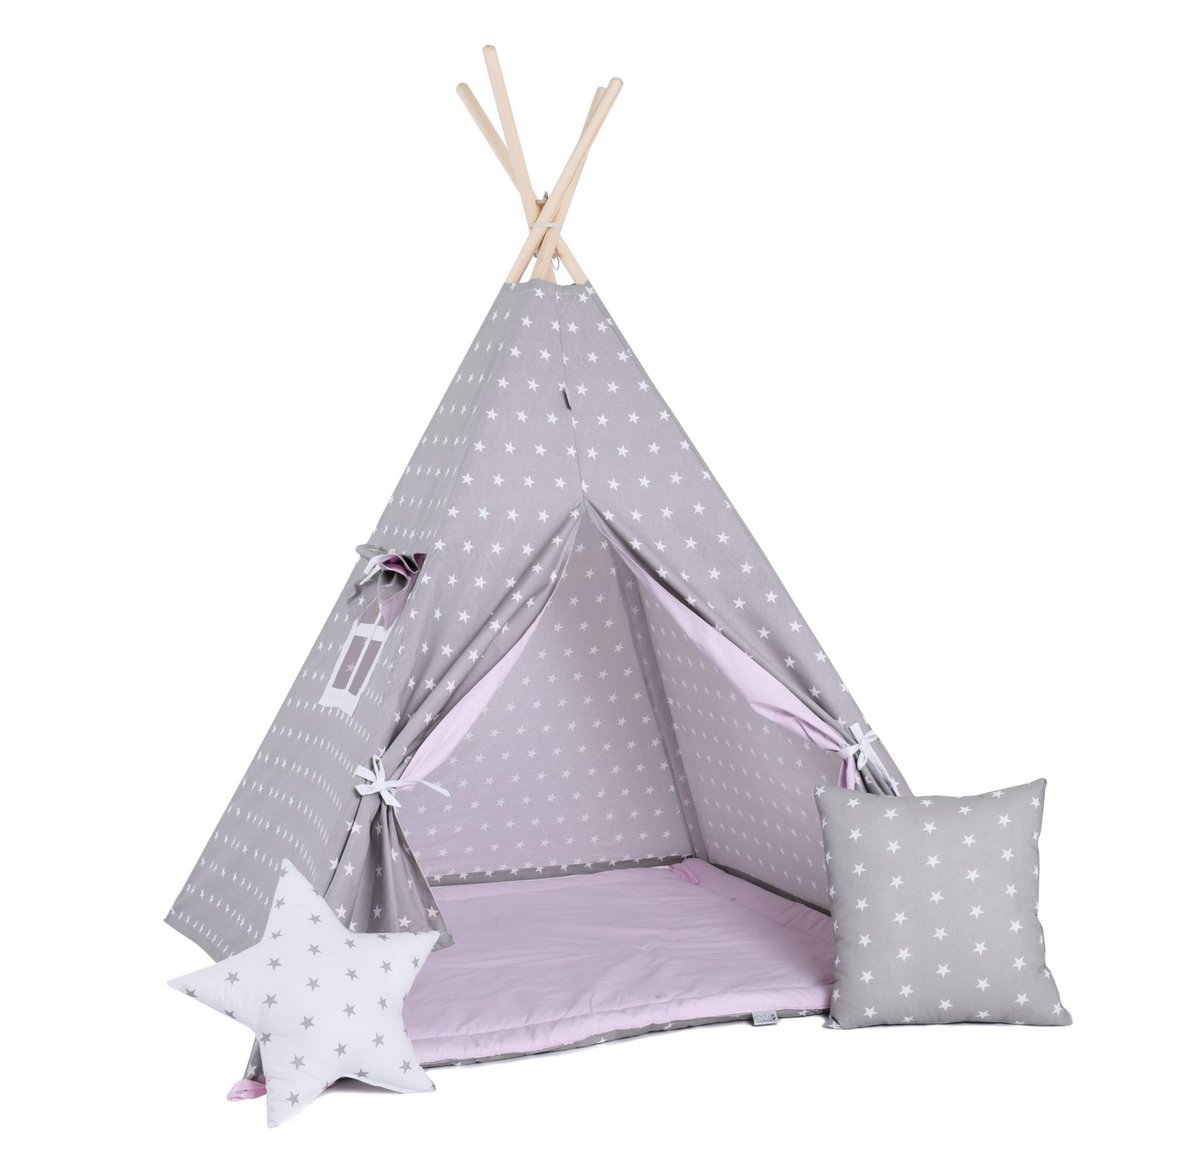 SowkaDesign Namiot tipi dla dzieci, bawełna, okienko, poduszka, różowy pyłek